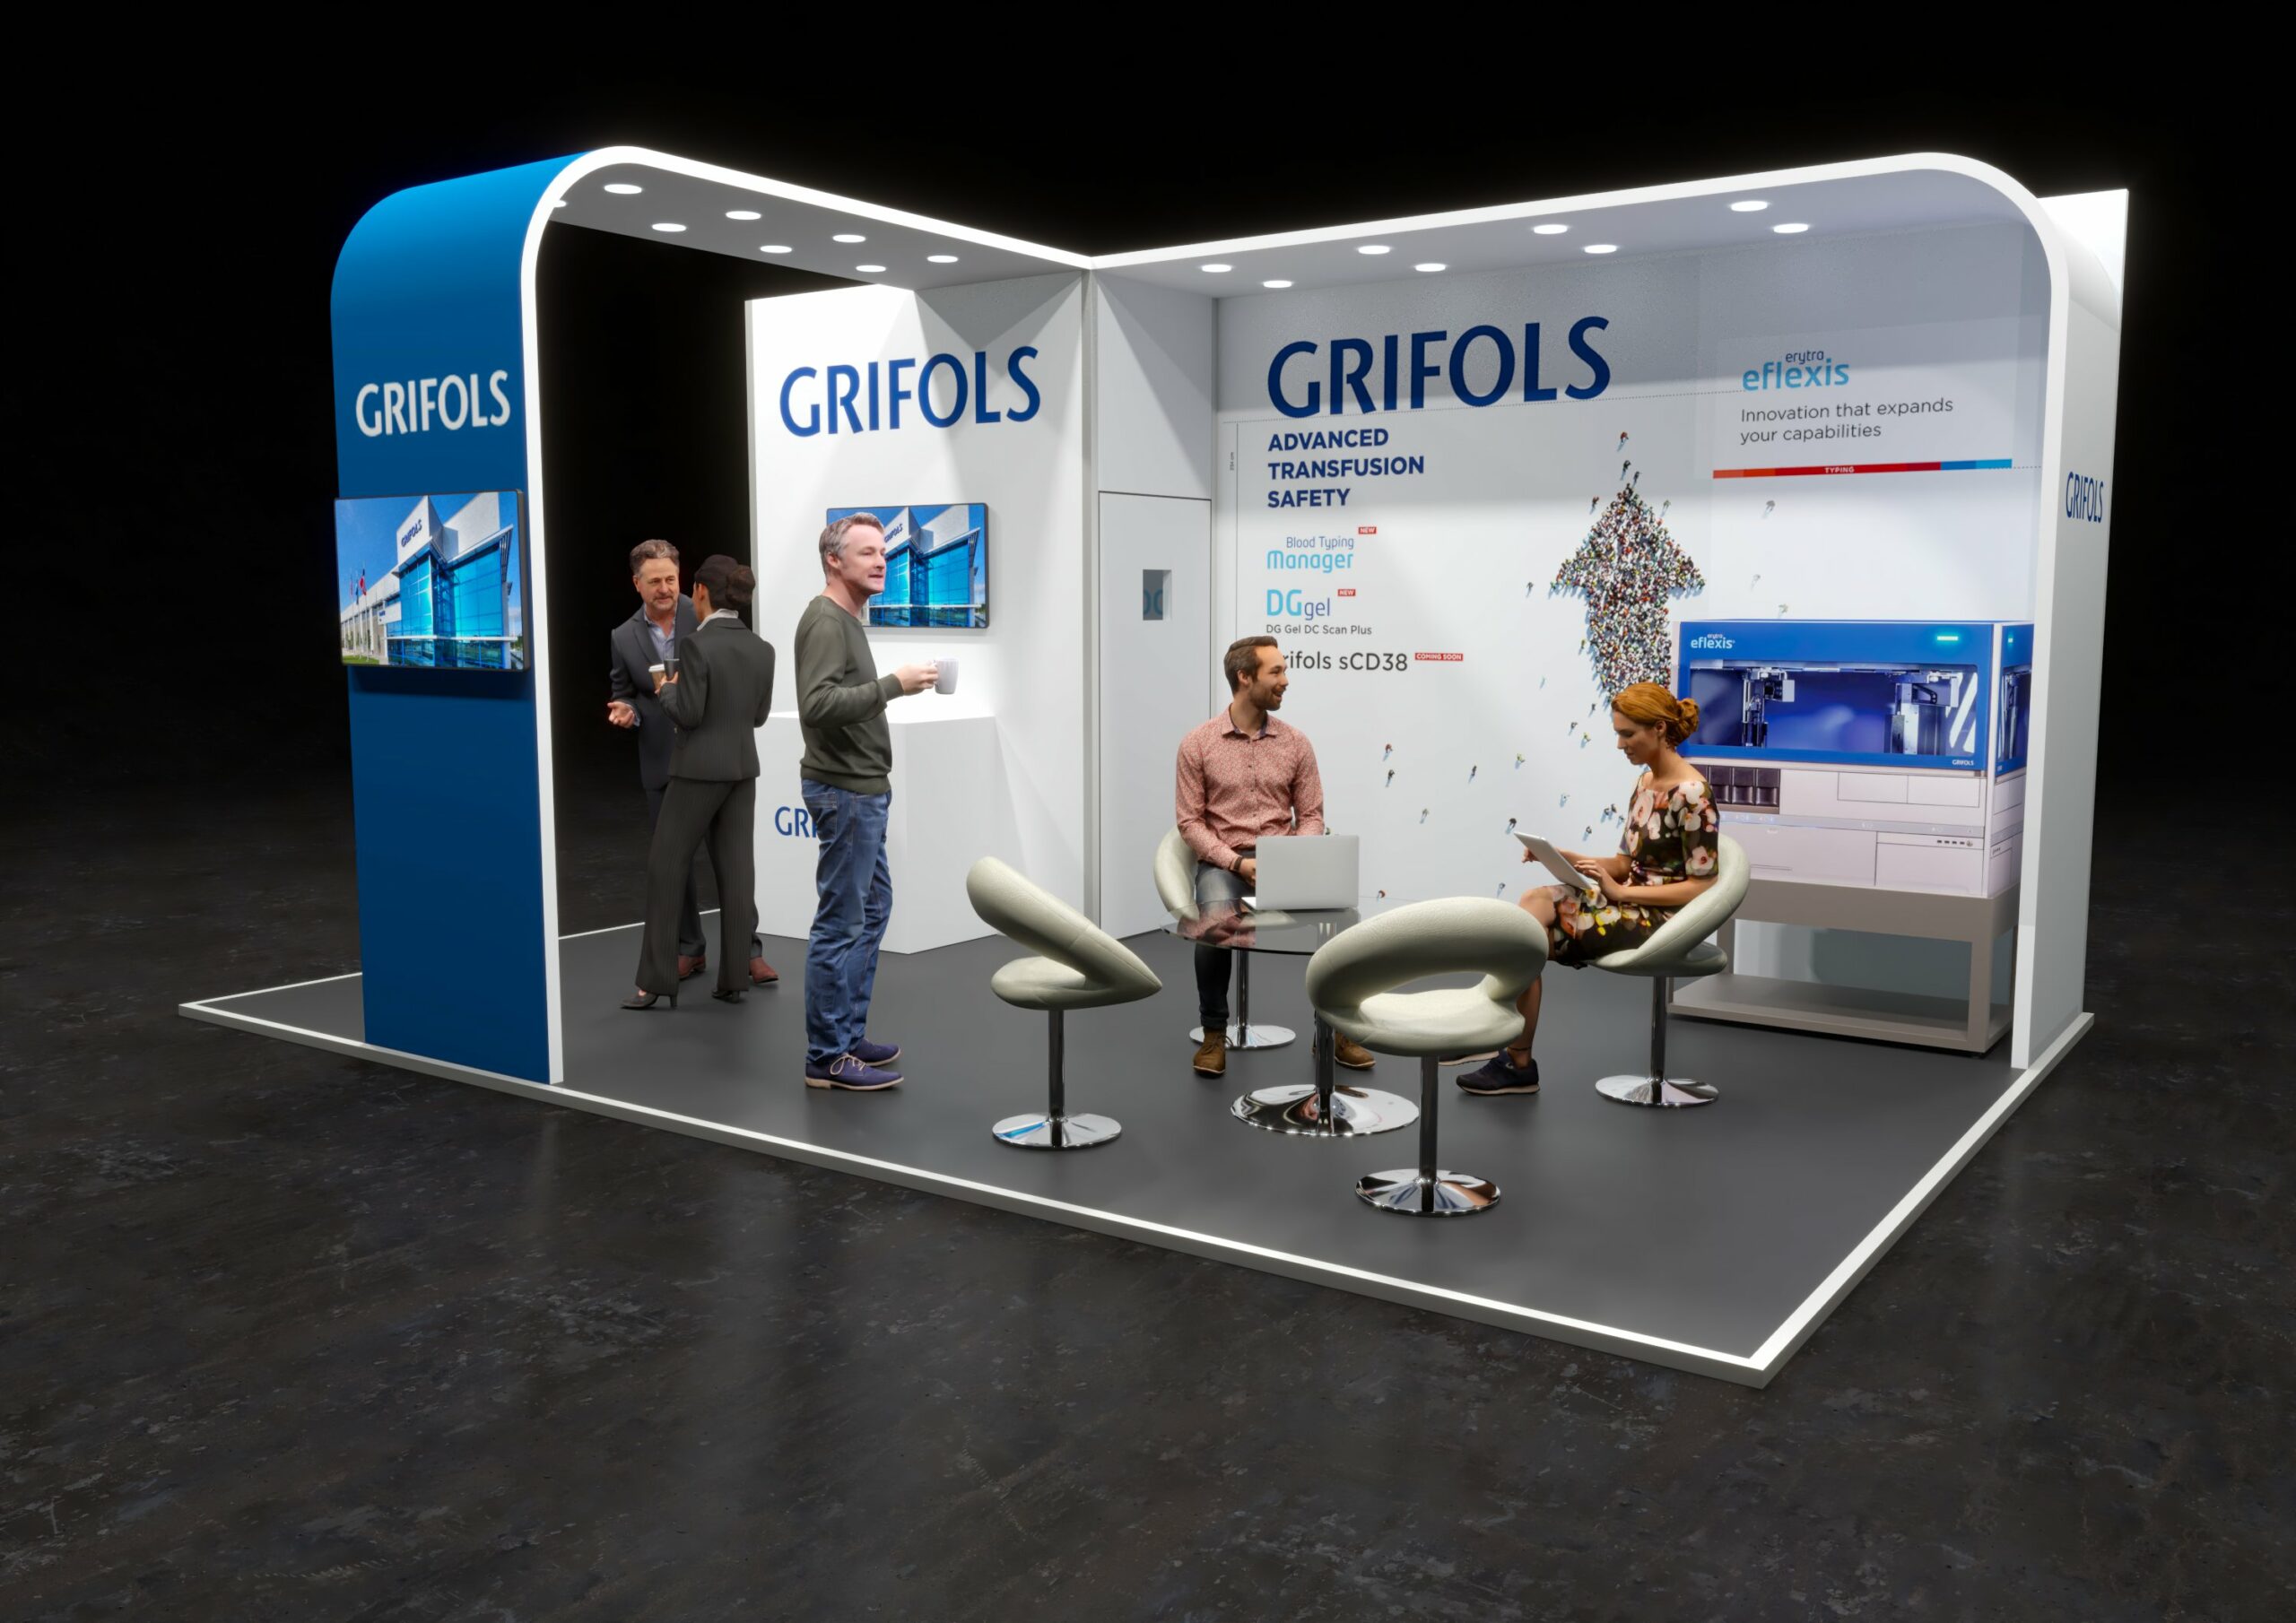 GRIFOLS Exhibition Stand Concept